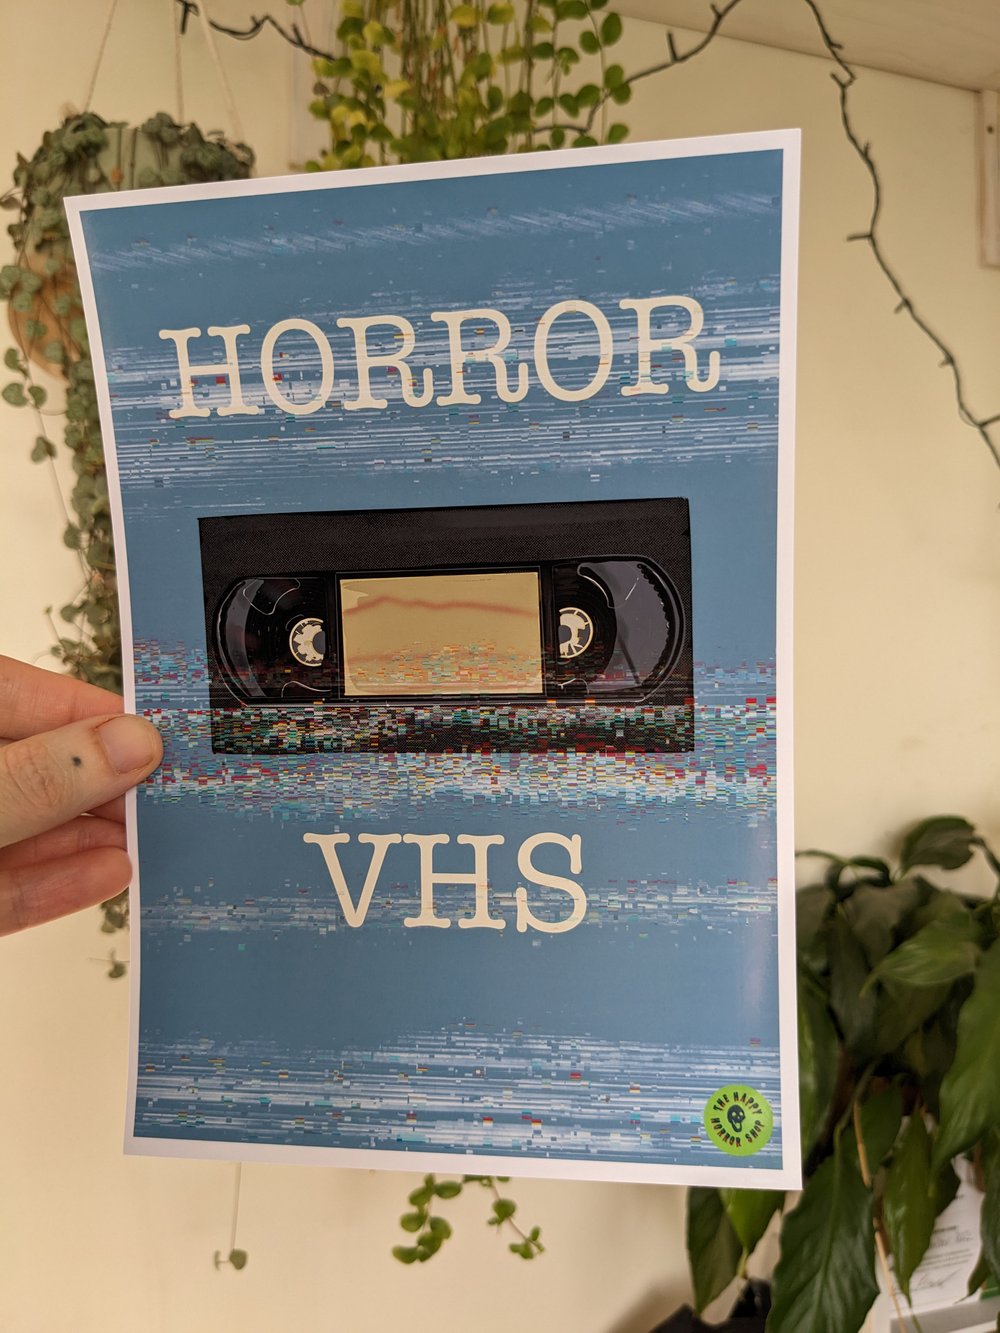 Horror VHS Illustration